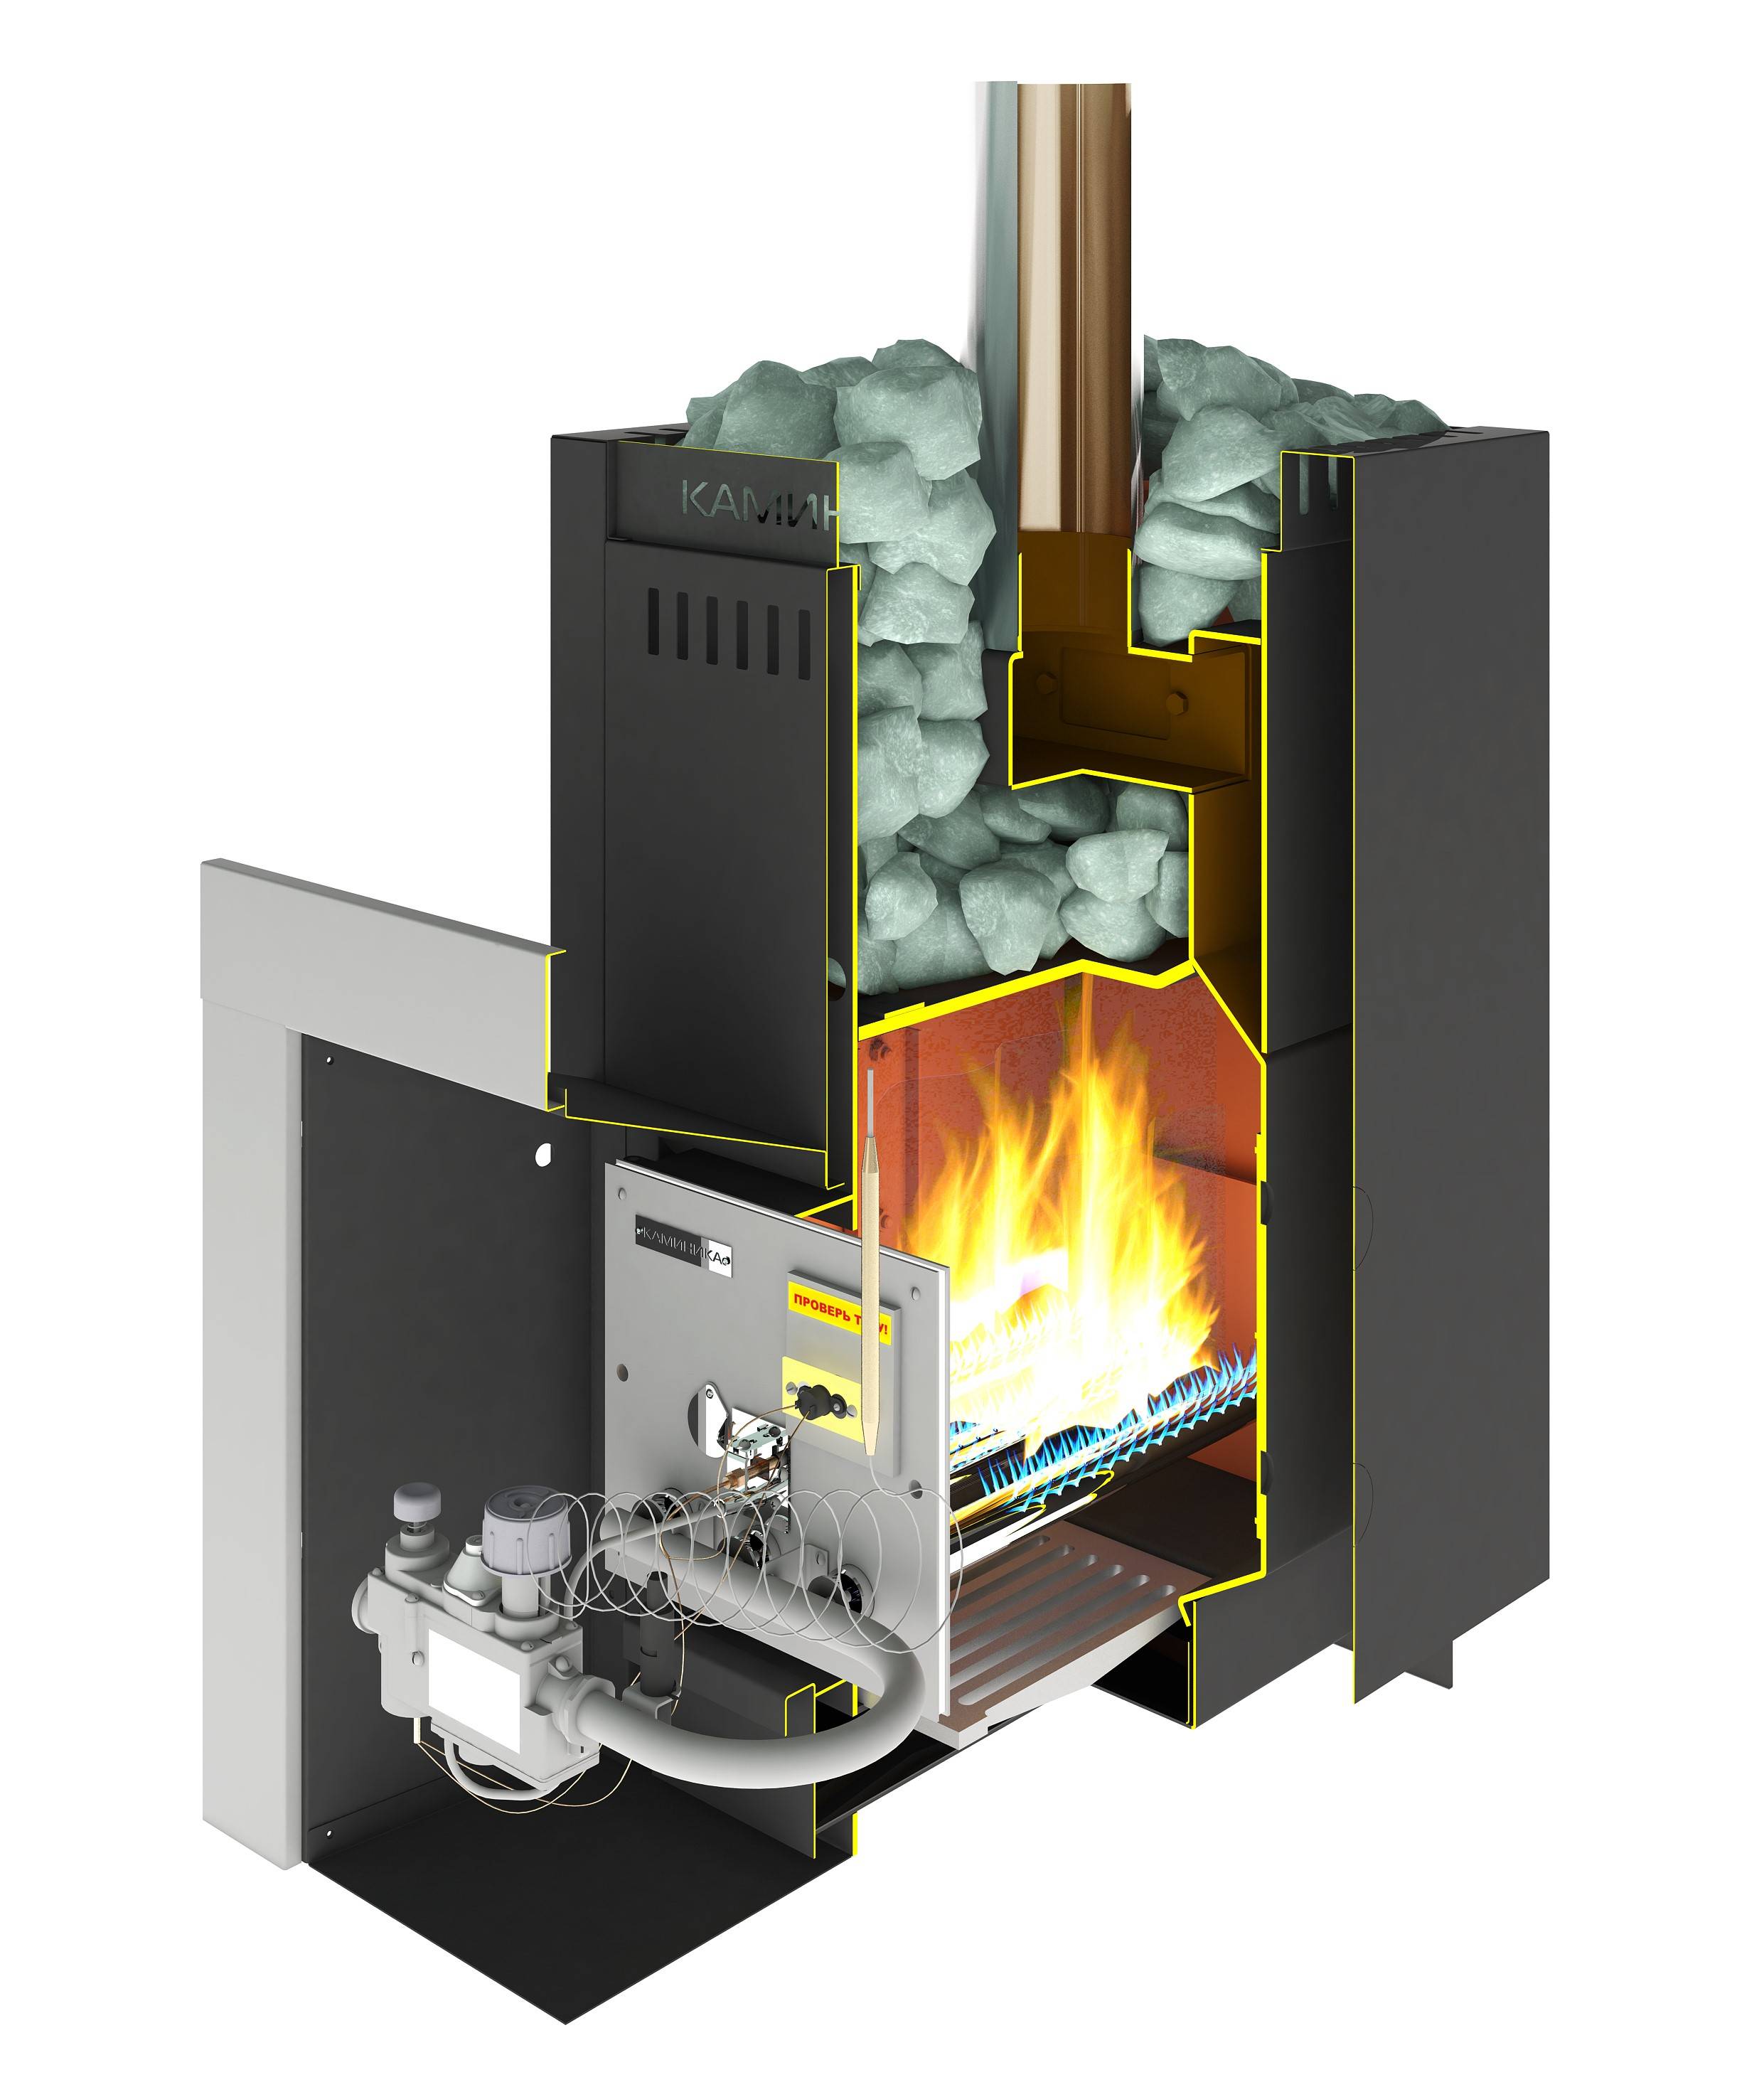 Печь для бани из нержавейки: банная печка с баком и дымоходом